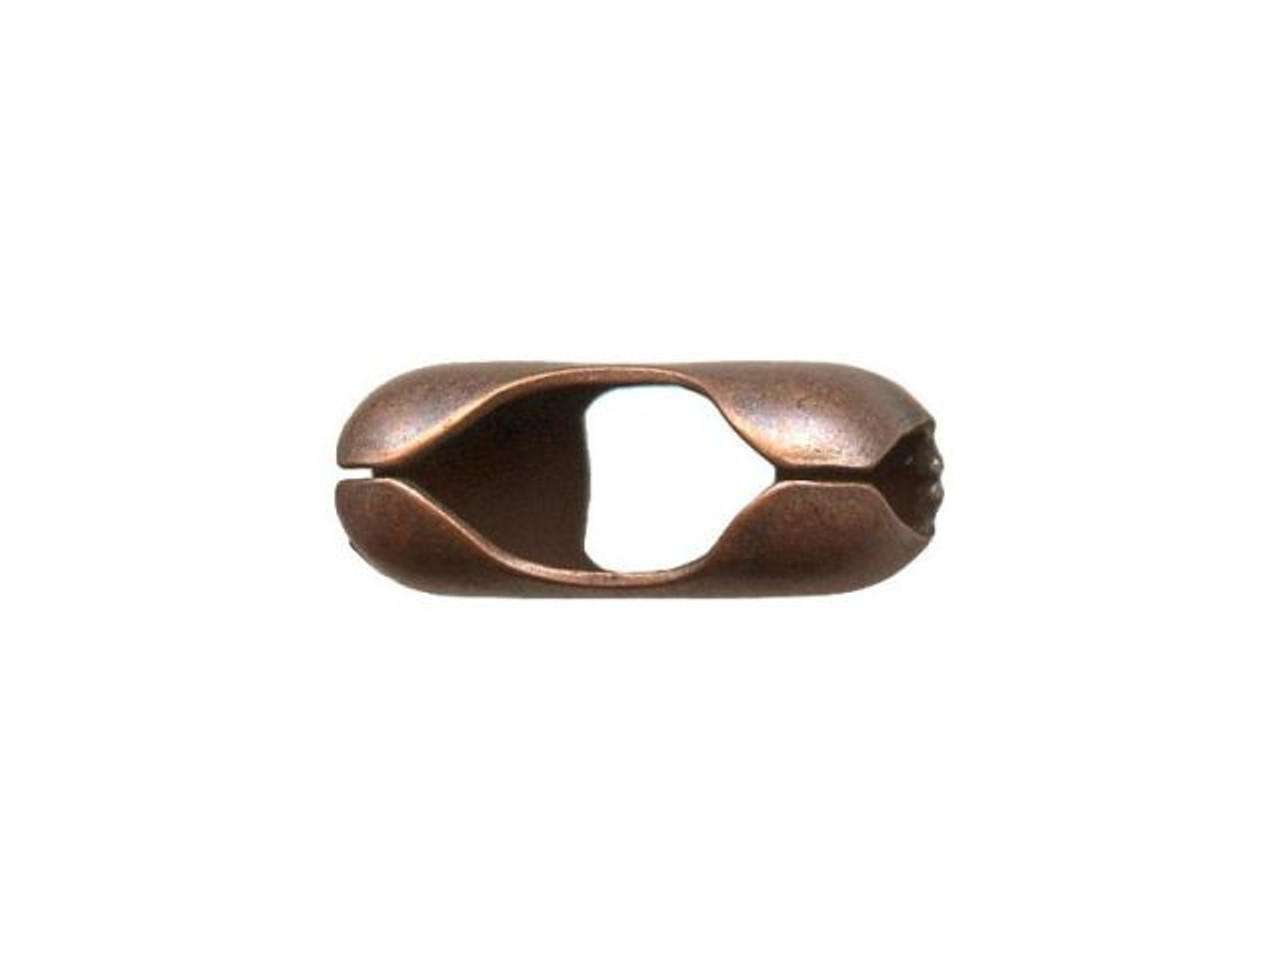 3.2 mm Copper Ball Chain, Raw Copper Chain